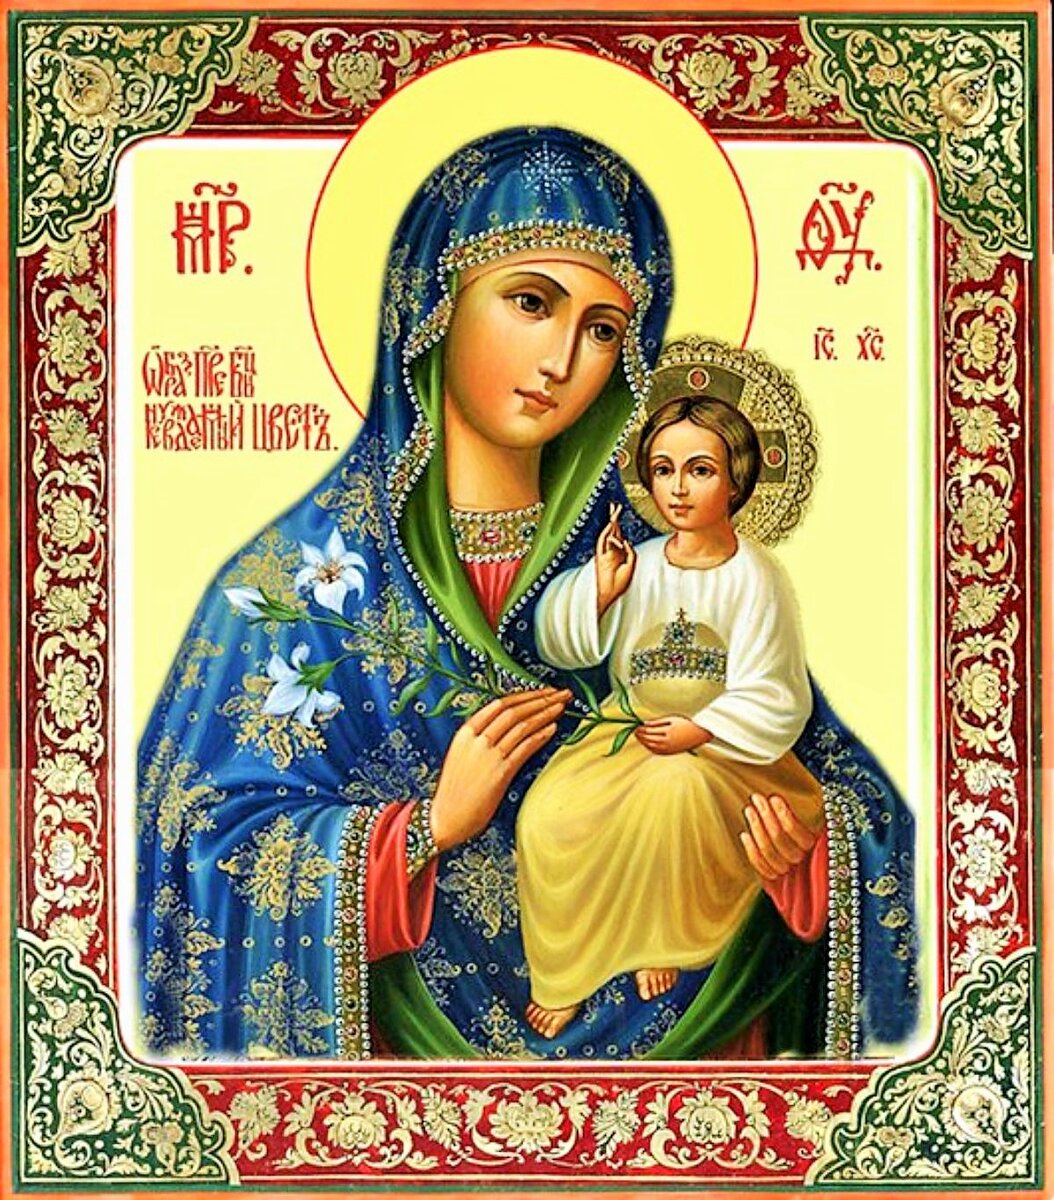 Икона неувядающий цвет Божьей матери. Икона Богородицы Неувядаемый цвет. Икона Девы Марии Неувядаемый цвет.